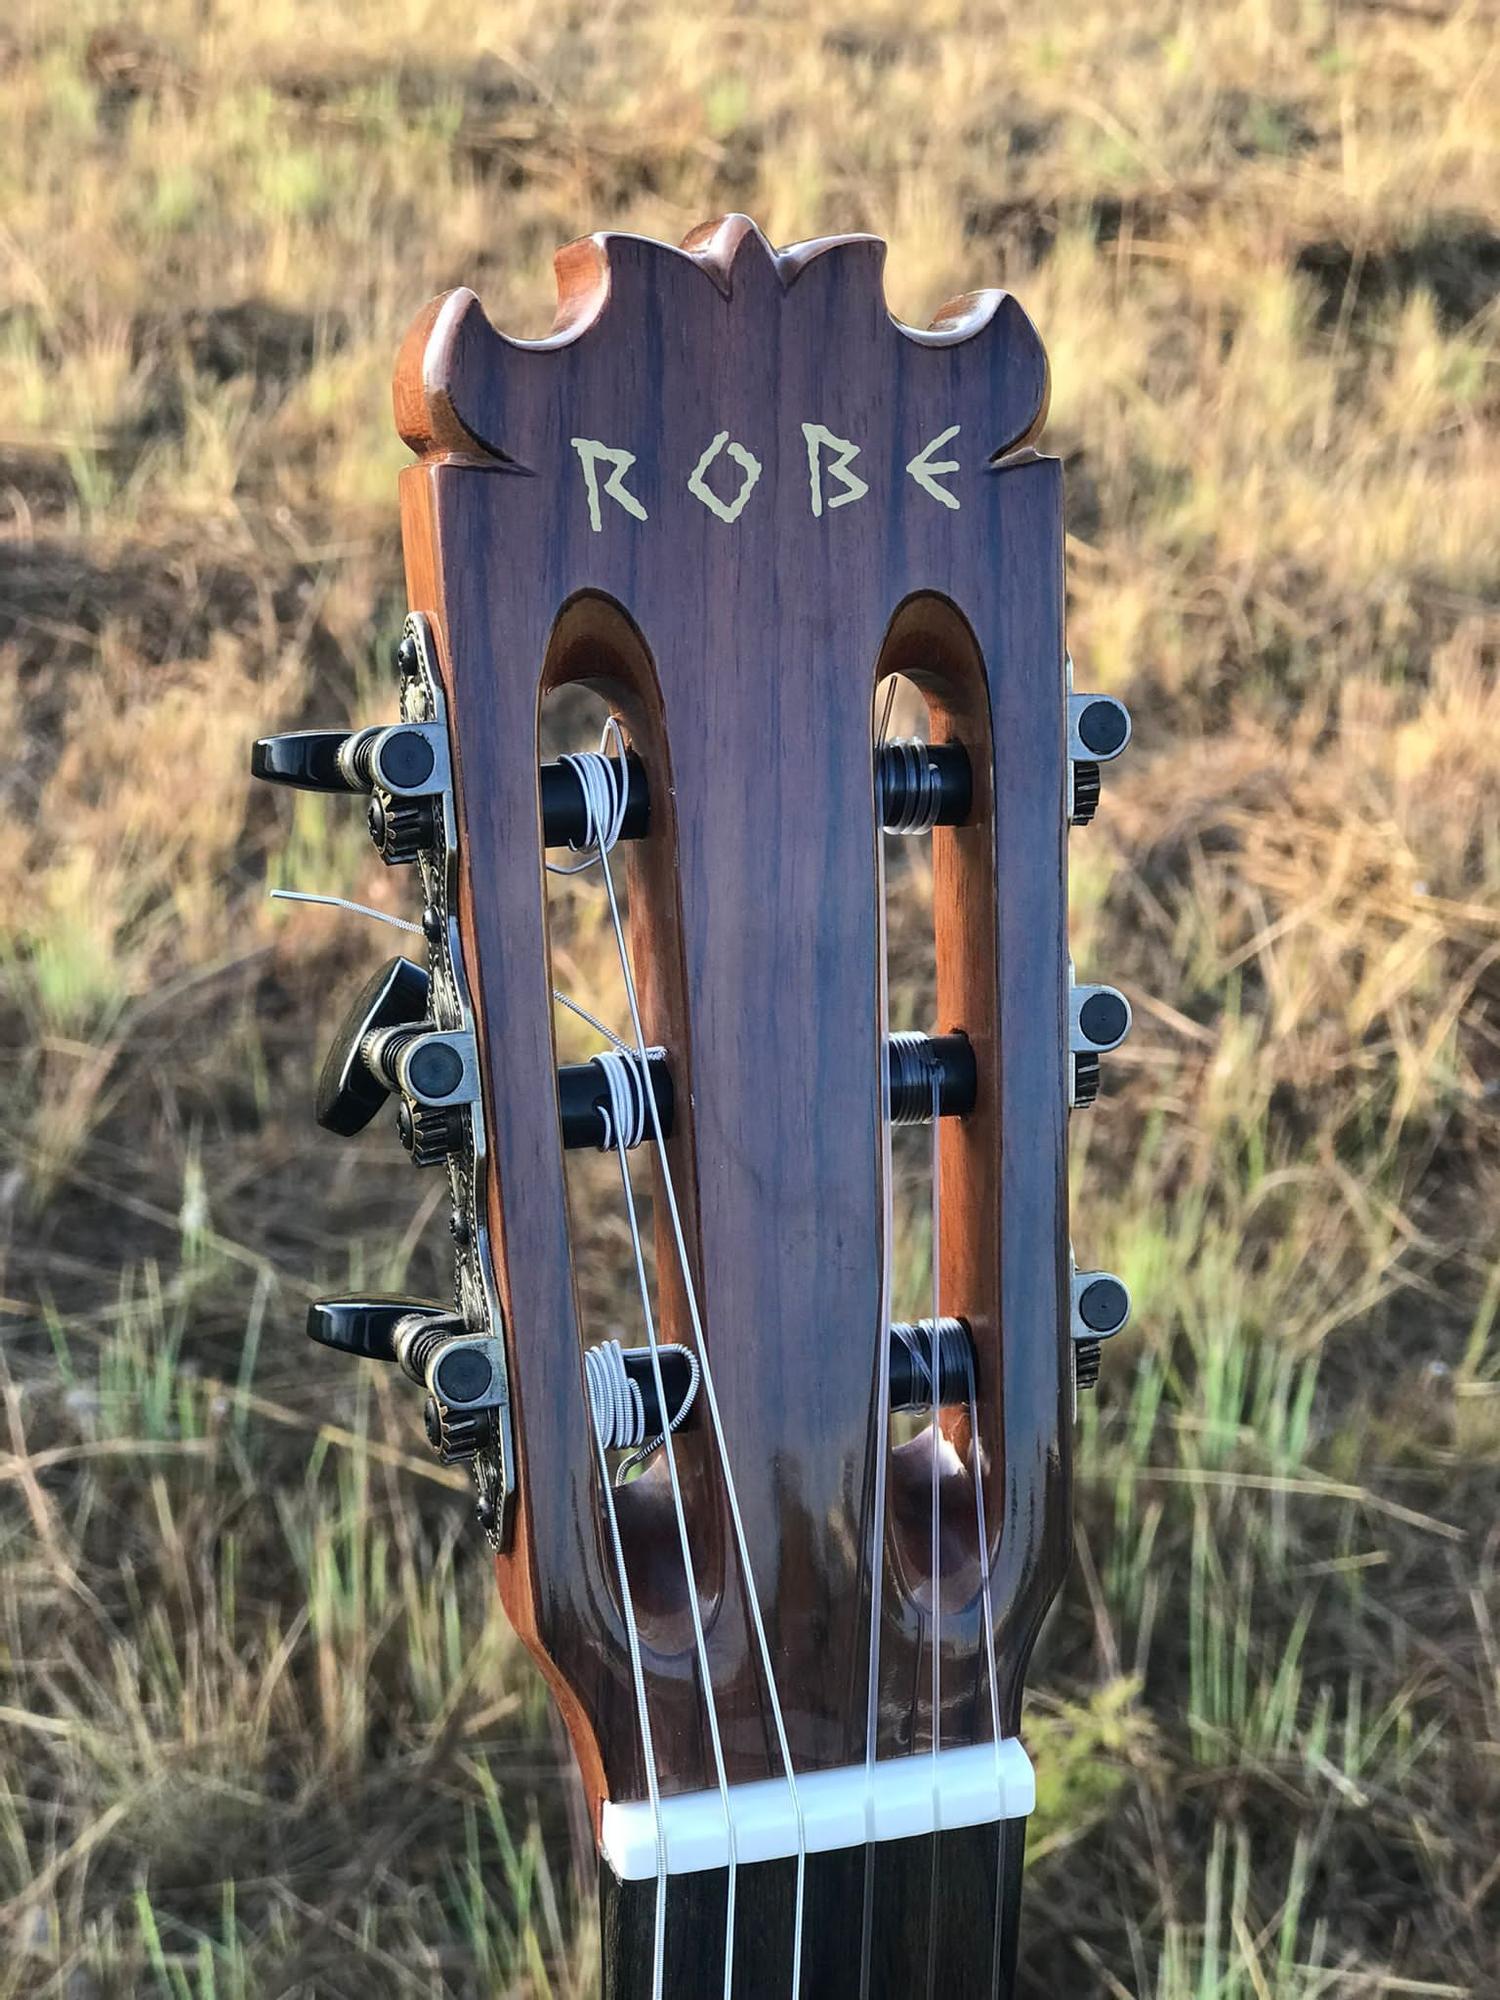 Detalle del nombre de Robe grabado en la guitarra